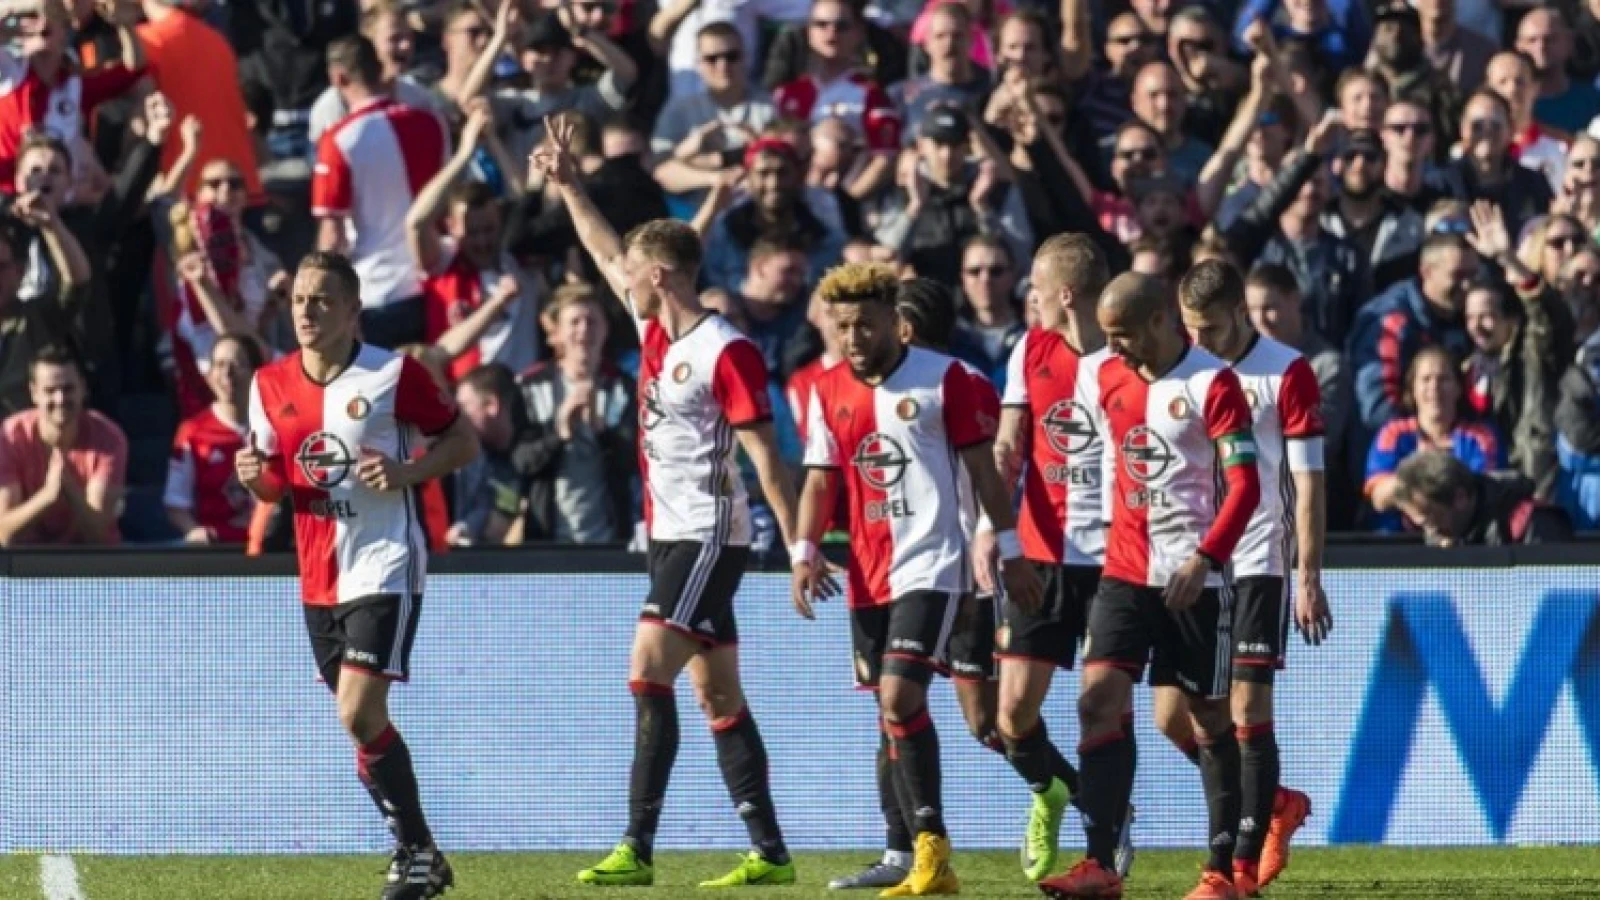 Opstelling | Feyenoord met twee wijzigingen tegen Go Ahead Eagles